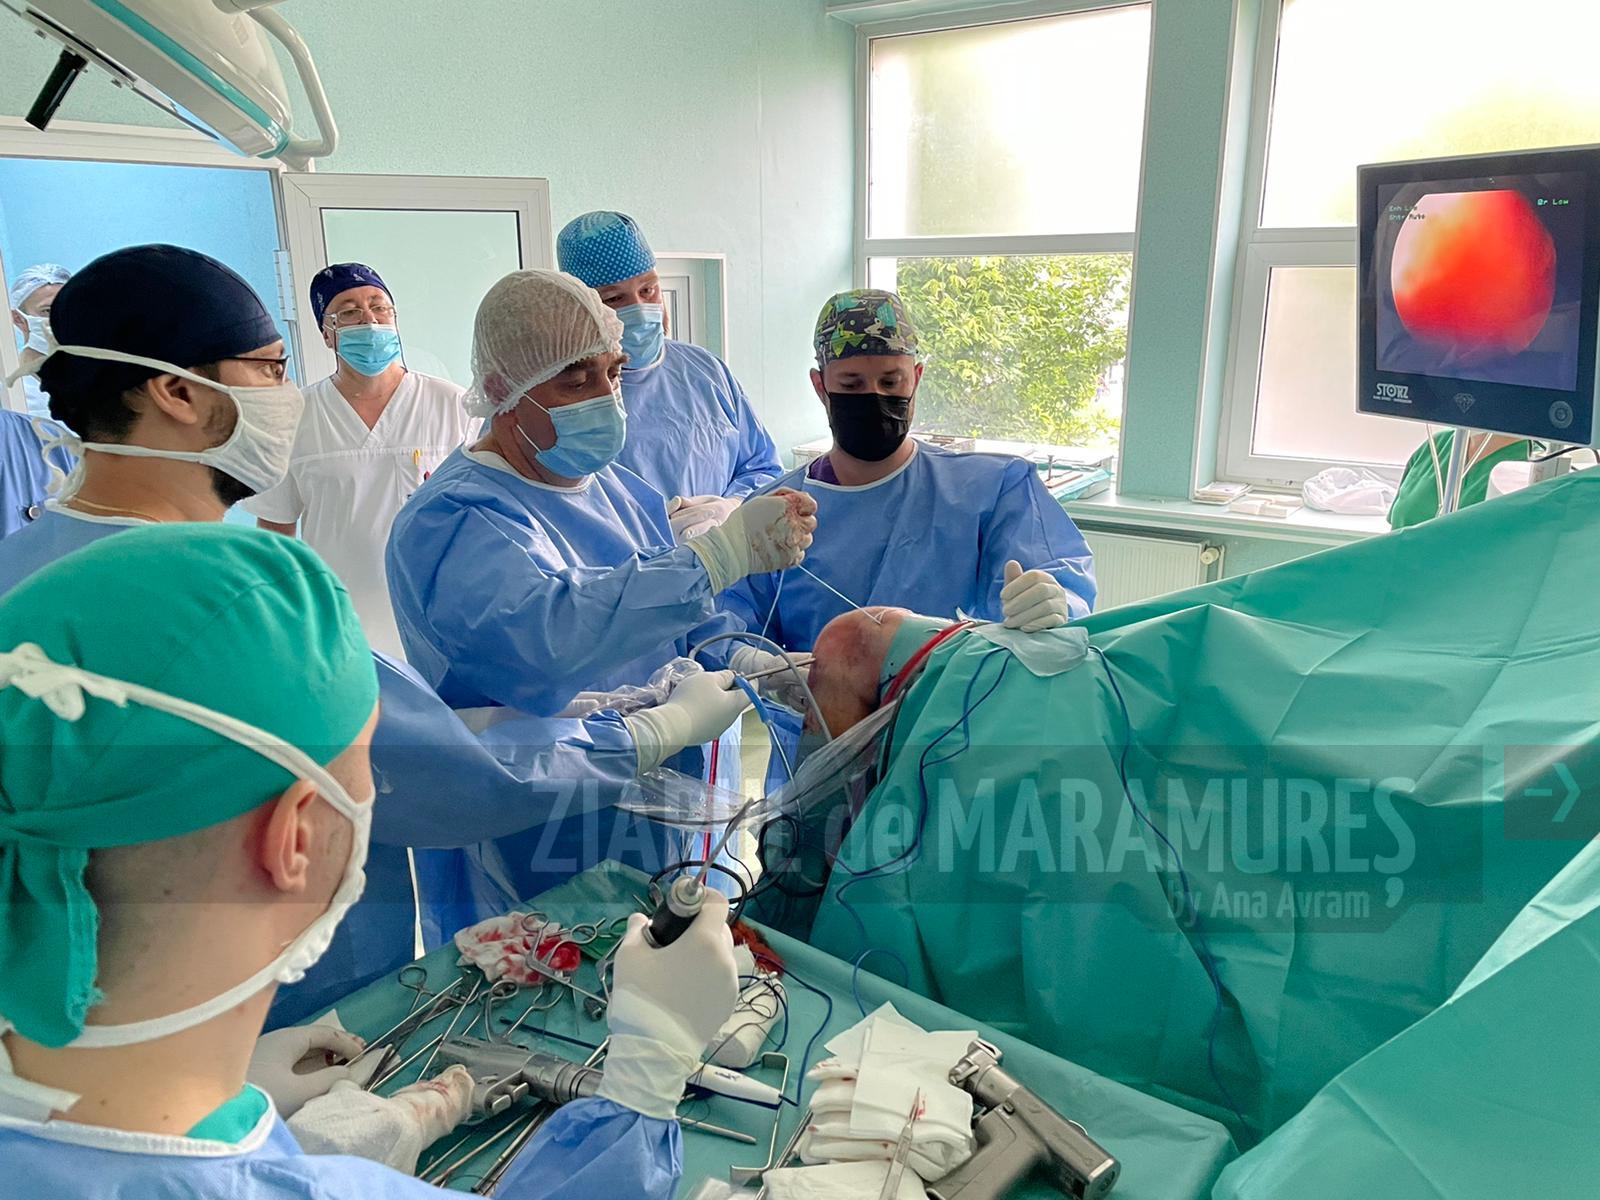 Intervenție chirurgicală complexă de reconstrucție la Spitalul Județean de Urgență ”Dr. Constantin Opriș” din Baia Mare